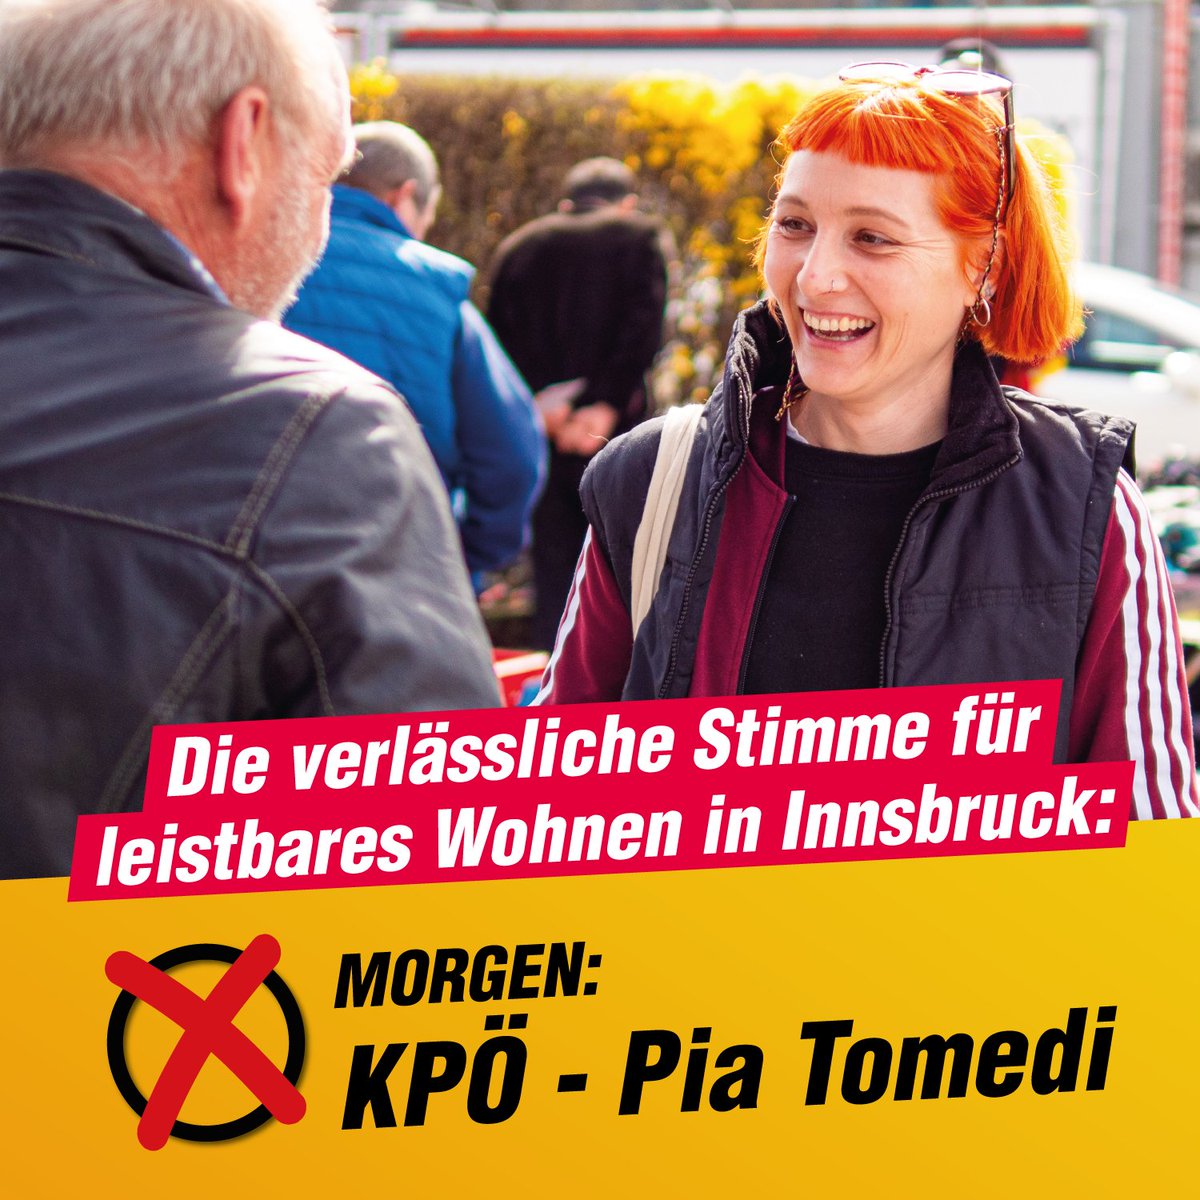 Morgen wir in #Innsbruck gewählt! Die etablierten Parteien haben vor der letzten Wahl viel versprochen, nach der Wahl ist davon nicht viel übrig geblieben. Damit sich das nicht wiederholt, braucht es eine verlässliche Stimme im Gemeinderat. Morgen: ✘ #KPÖ in Innsbruck